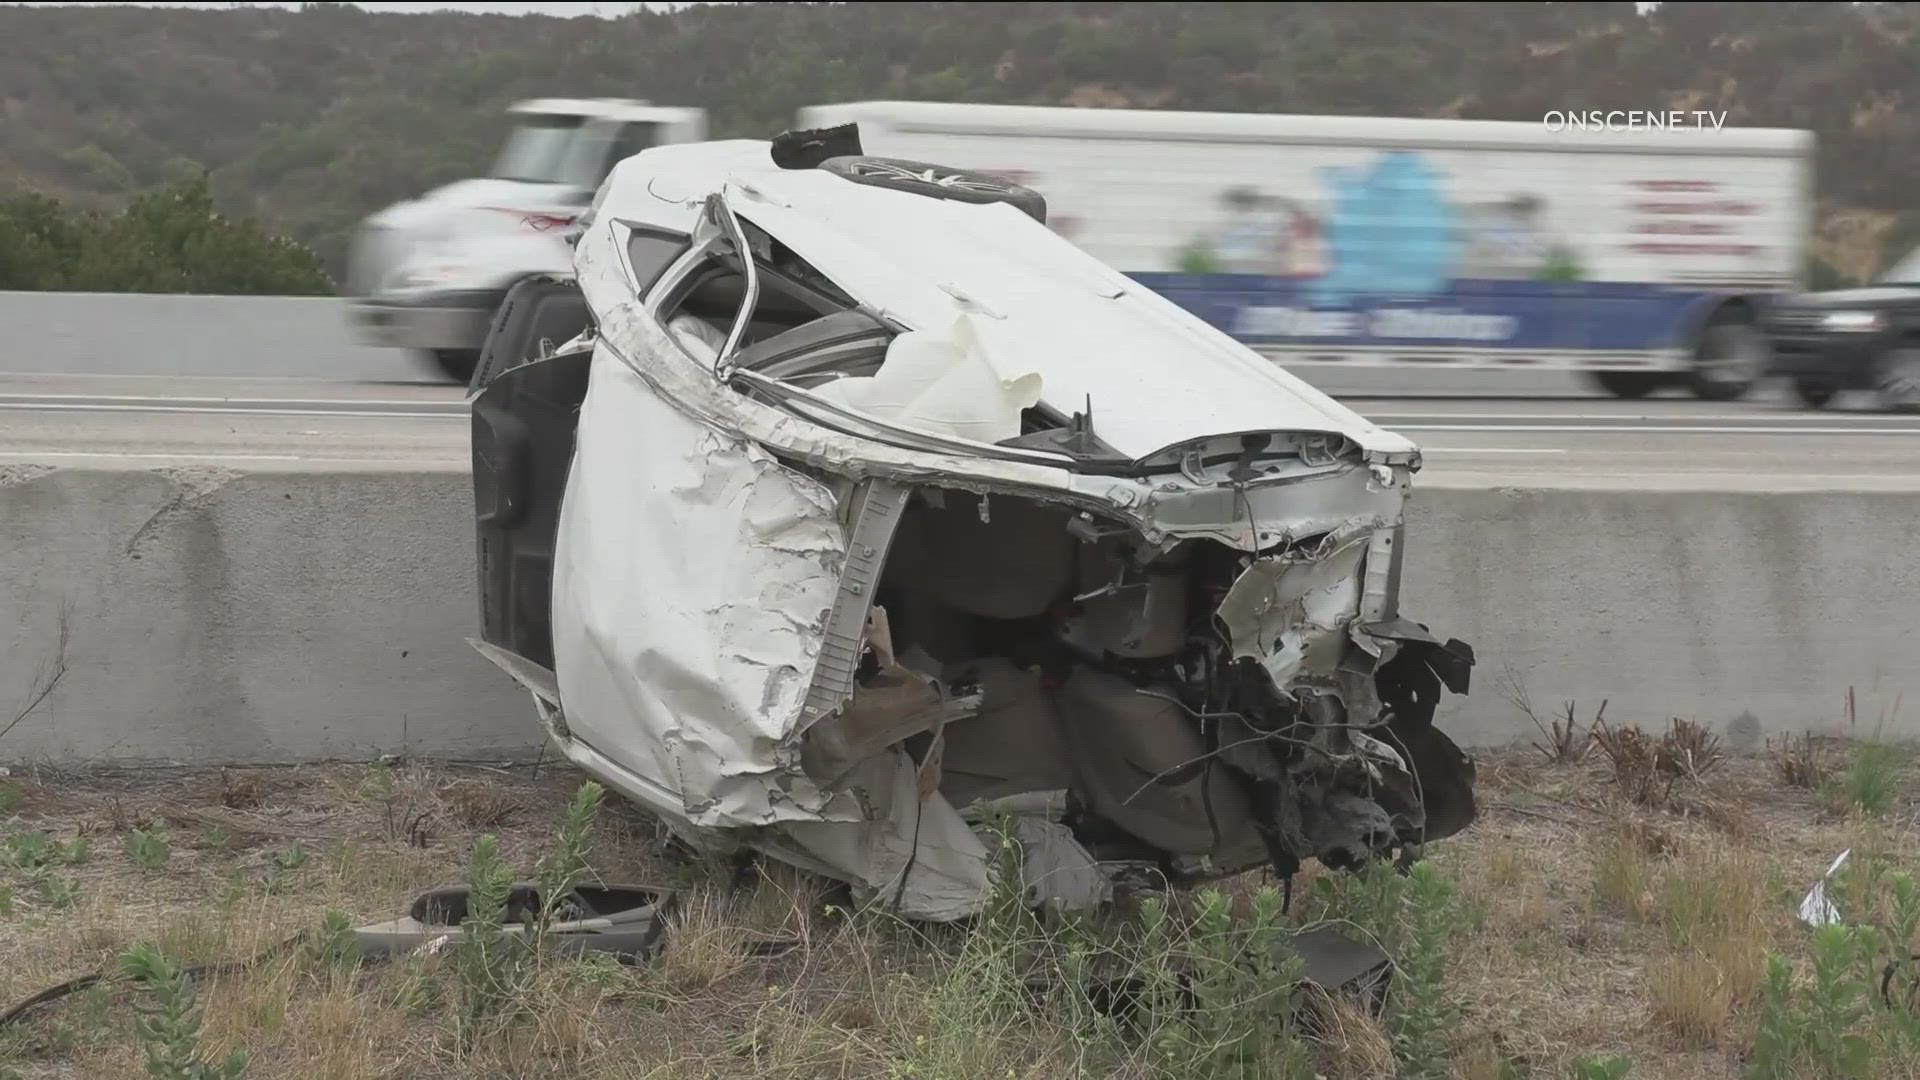 28-year-old man killed after crashing on Interstate 15 in Miramar.